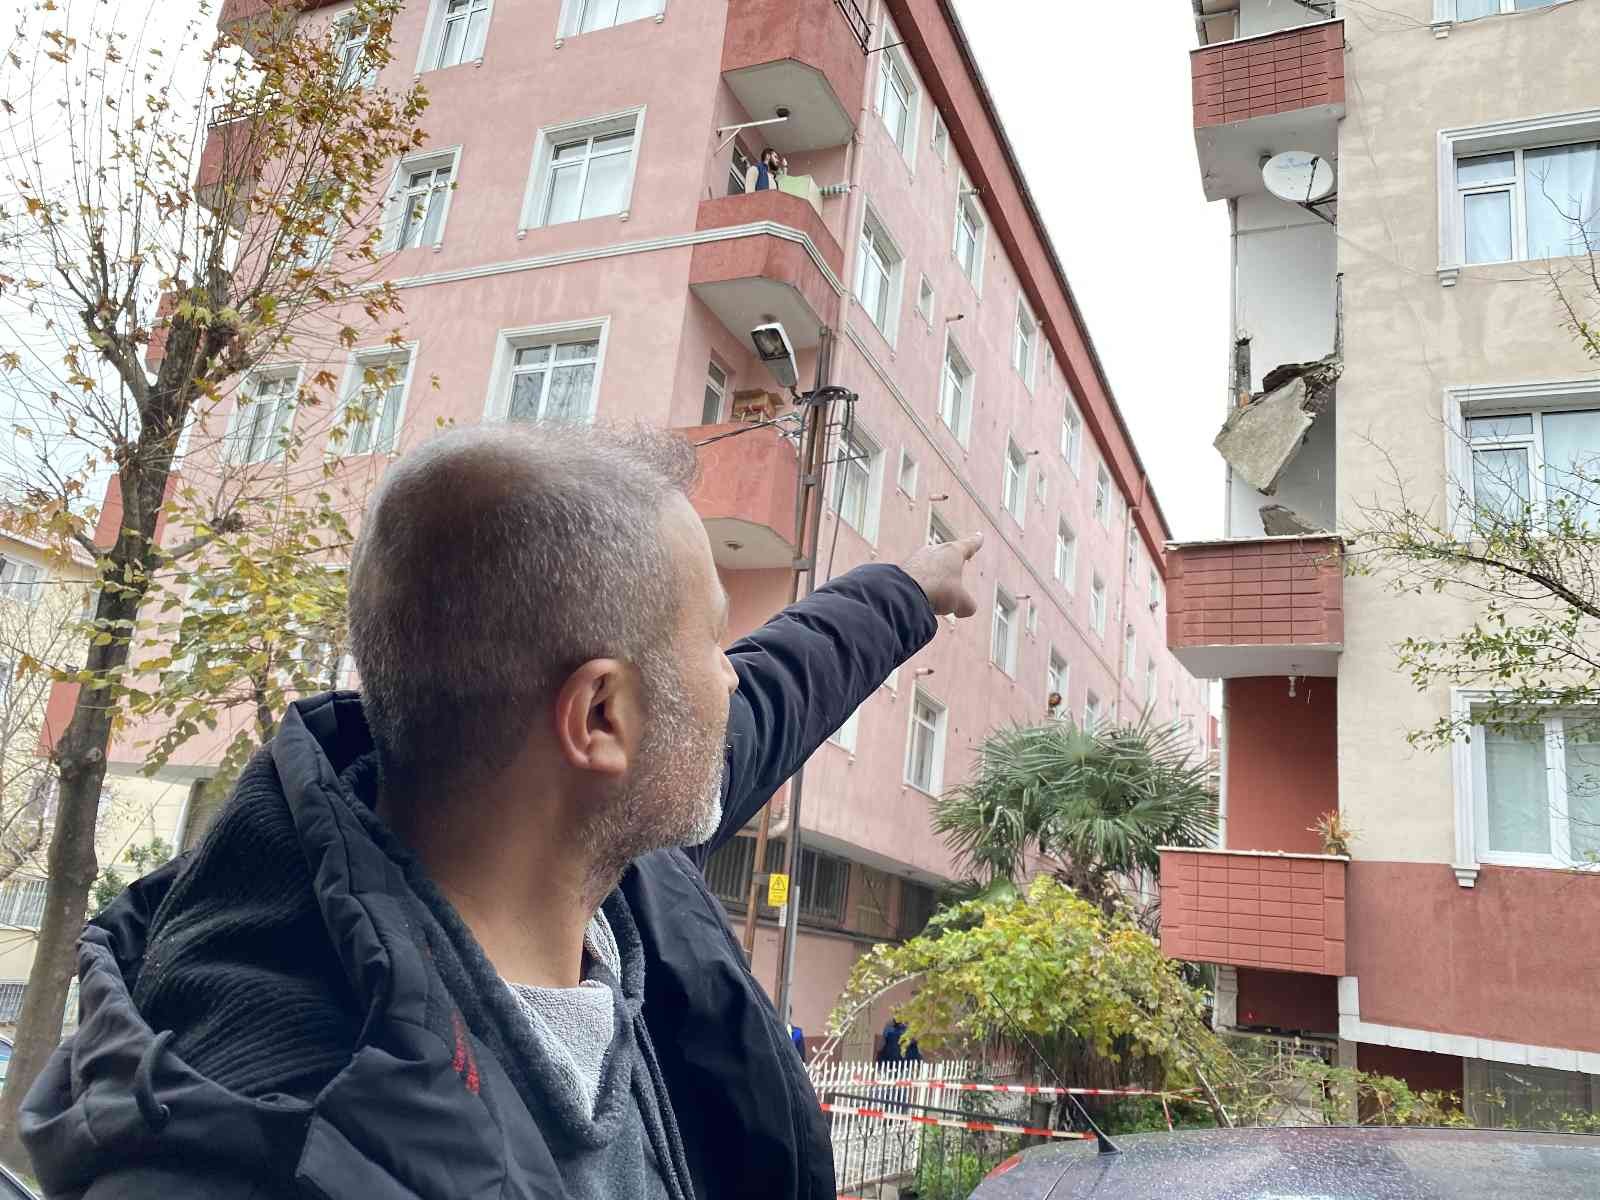 Güngören’de bir binanın 3’üncü katında bulunan balkon çöktü #istanbul